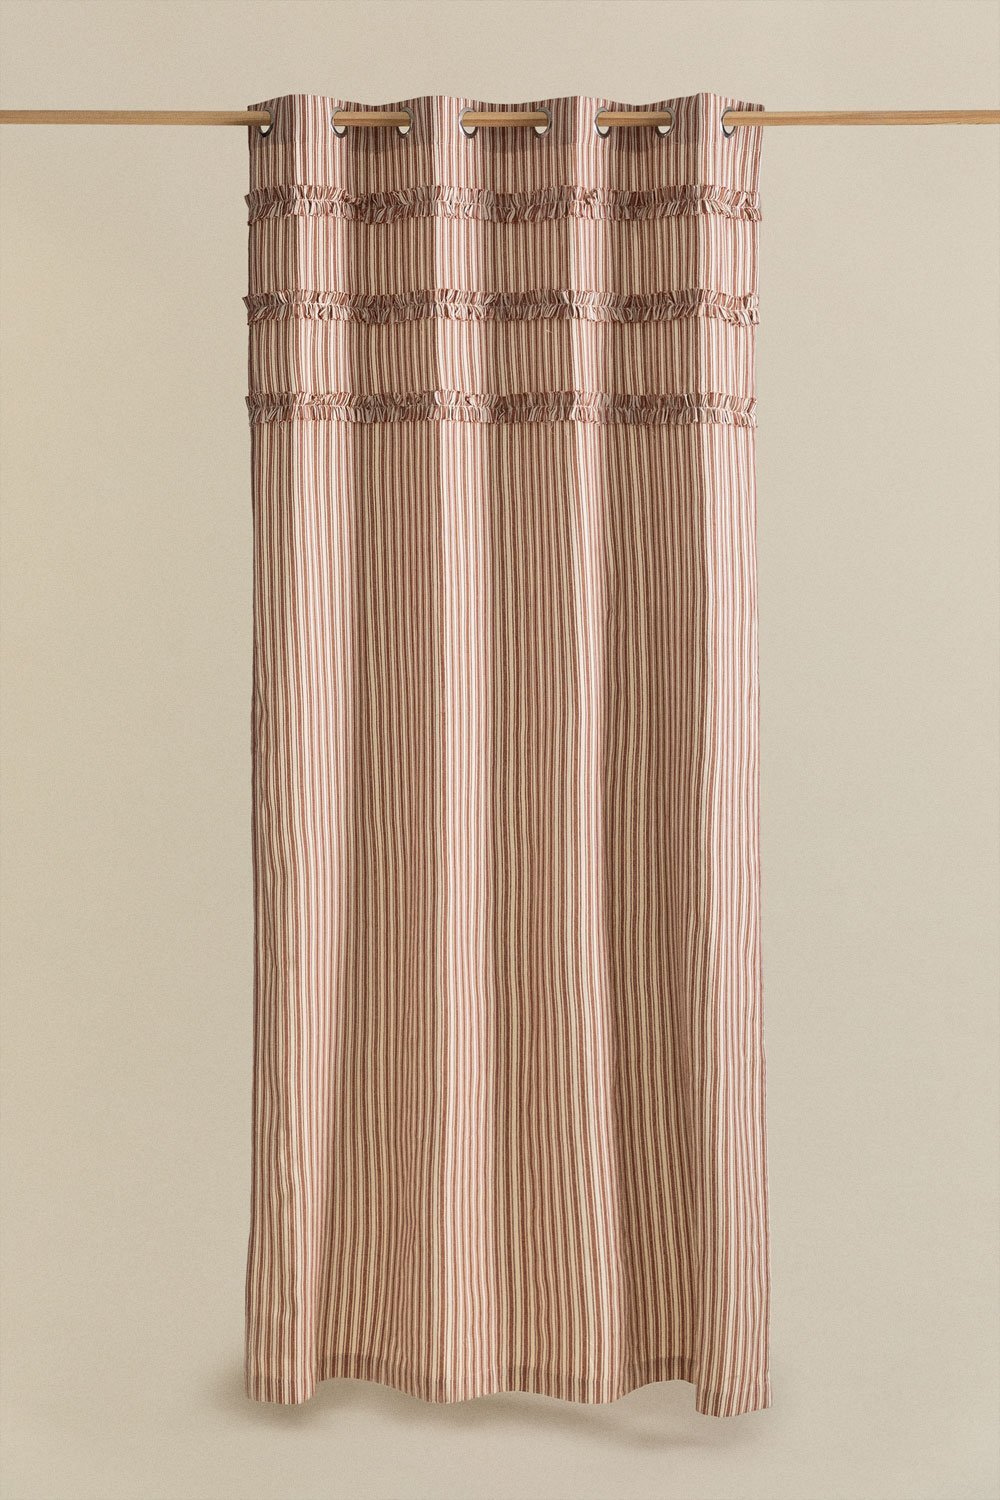 Katoenen gordijn (140x260 cm) Mogrena, galerij beeld 1